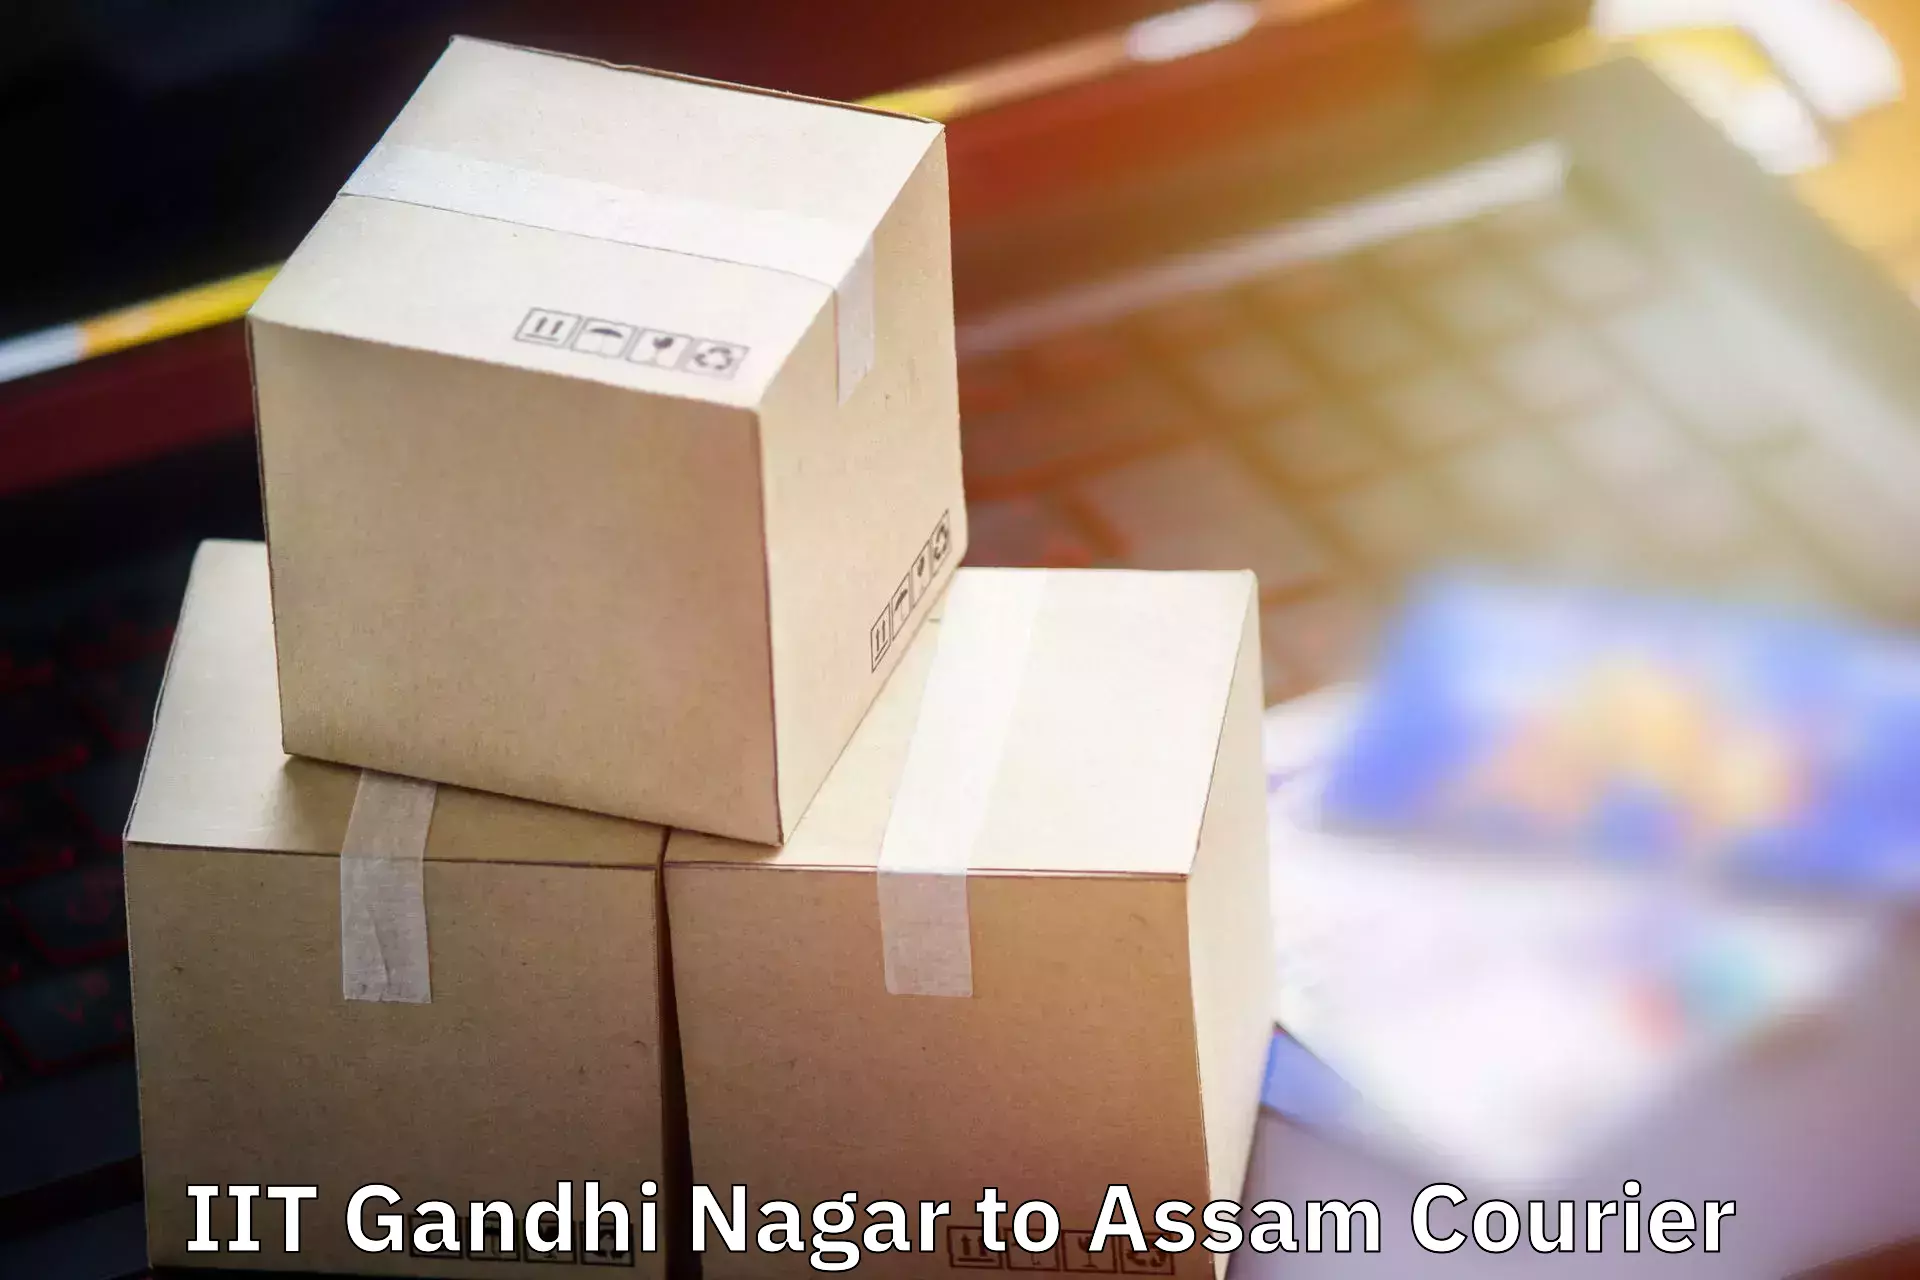 Baggage shipping experts IIT Gandhi Nagar to Digboi